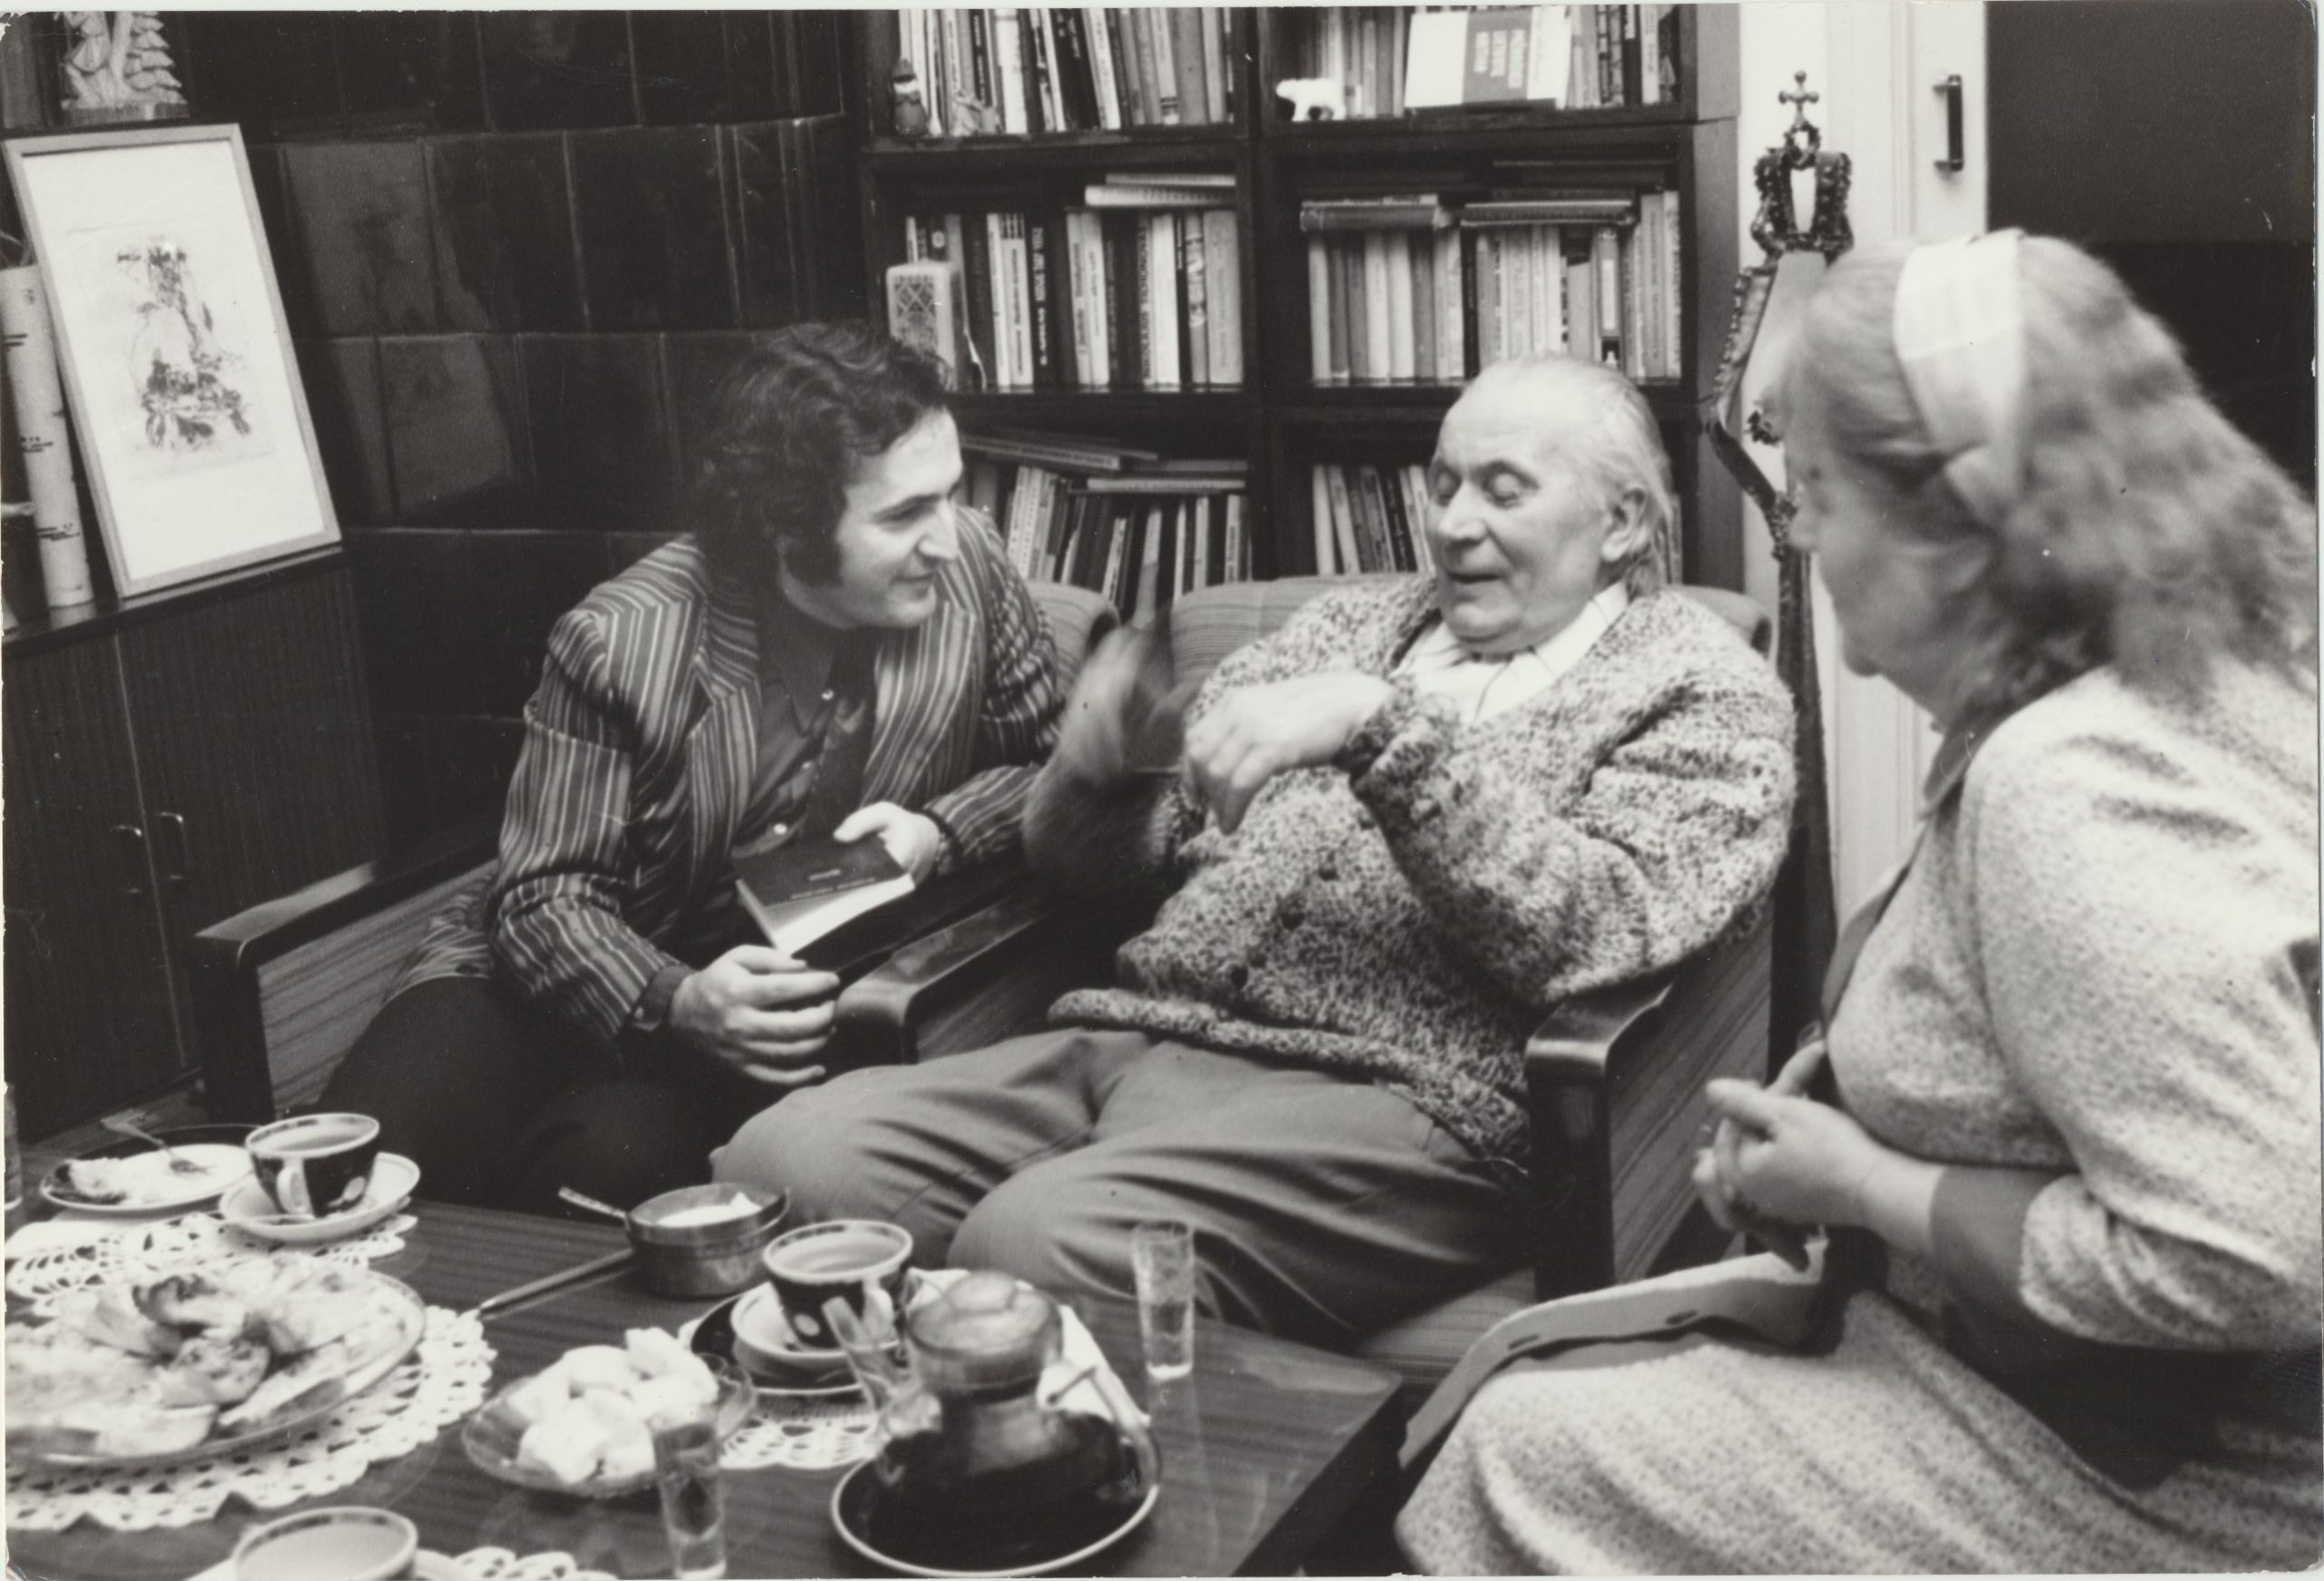 F. Bachčinianas, J. Grušas ir P. Grušienė. Kaunas, 1979 m. Algirdo Žukausko nuotrauka. MLLM JGM GEK 2526/2